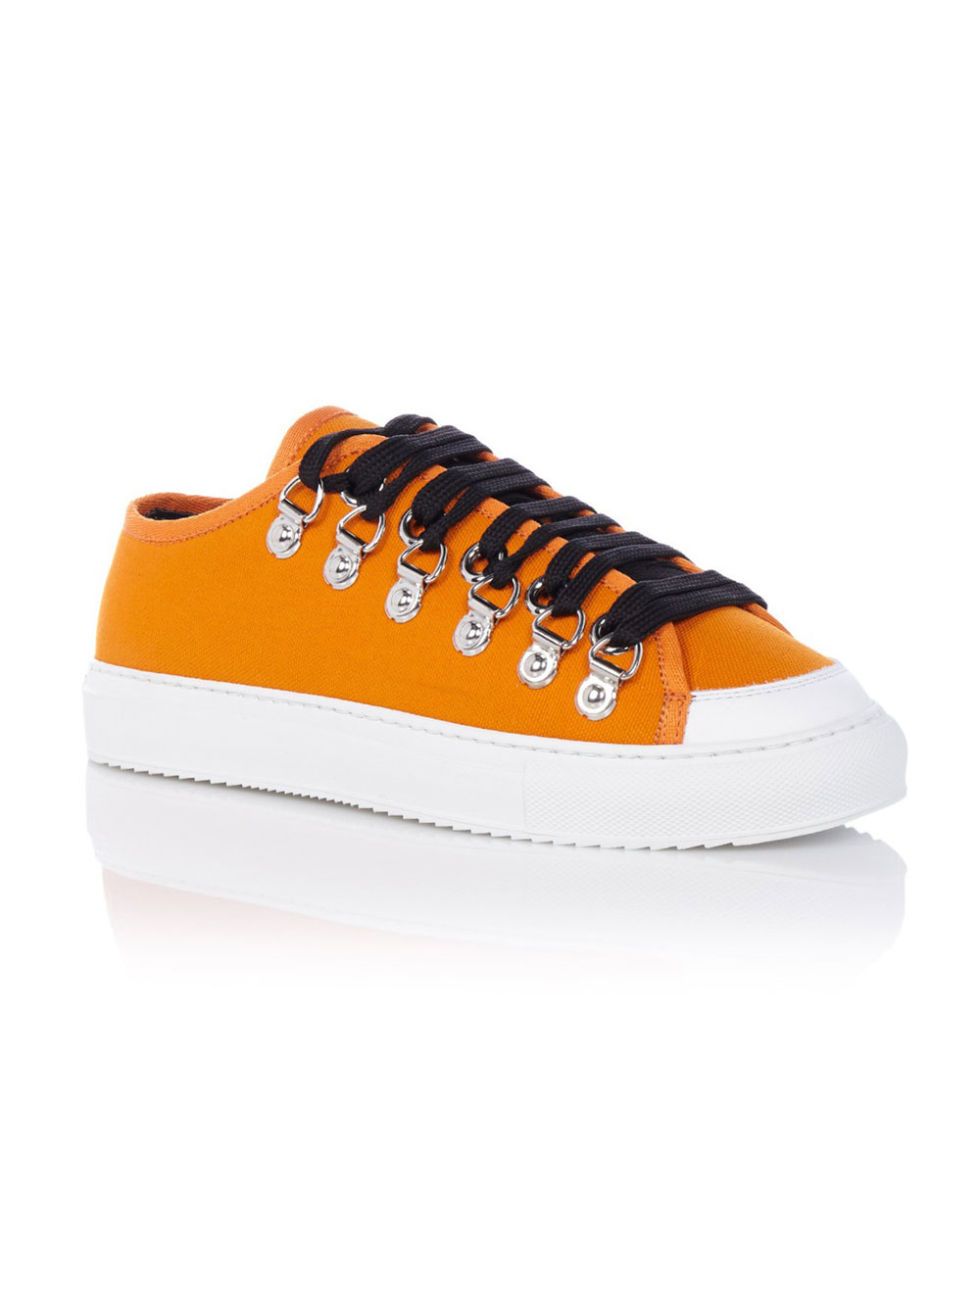 Footwear, Shoe, Orange, White, Tan, Carmine, Beige, Walking shoe, Peach, Sneakers, 